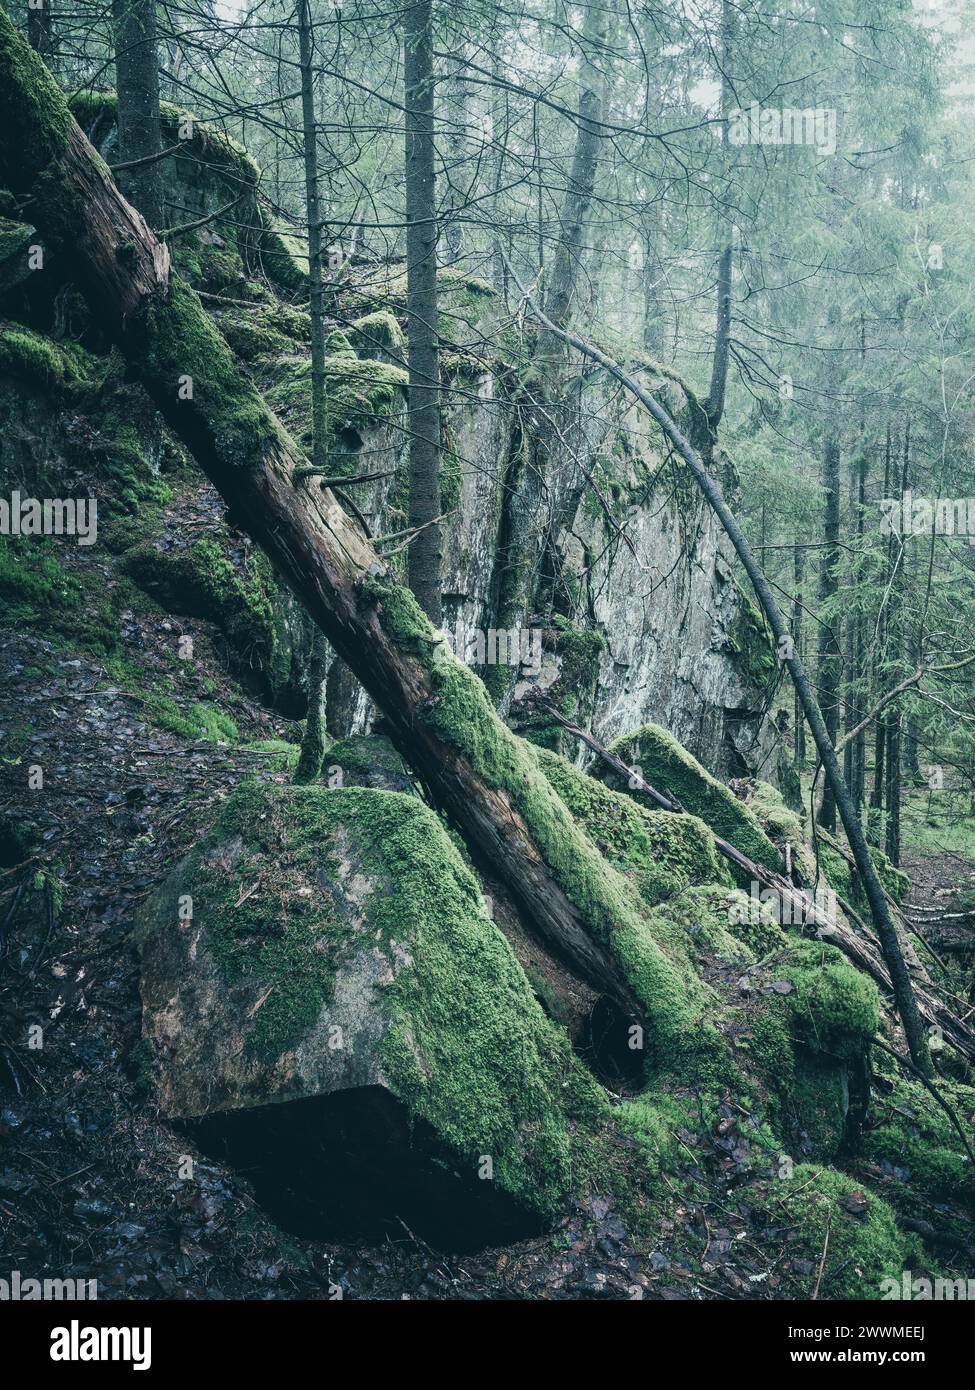 Une aube tranquille accueille la mousse verdoyante recouvrant les rochers et les arbres tombés dans une forêt suédoise dense. La lumière douce filtrant à travers le toit Banque D'Images